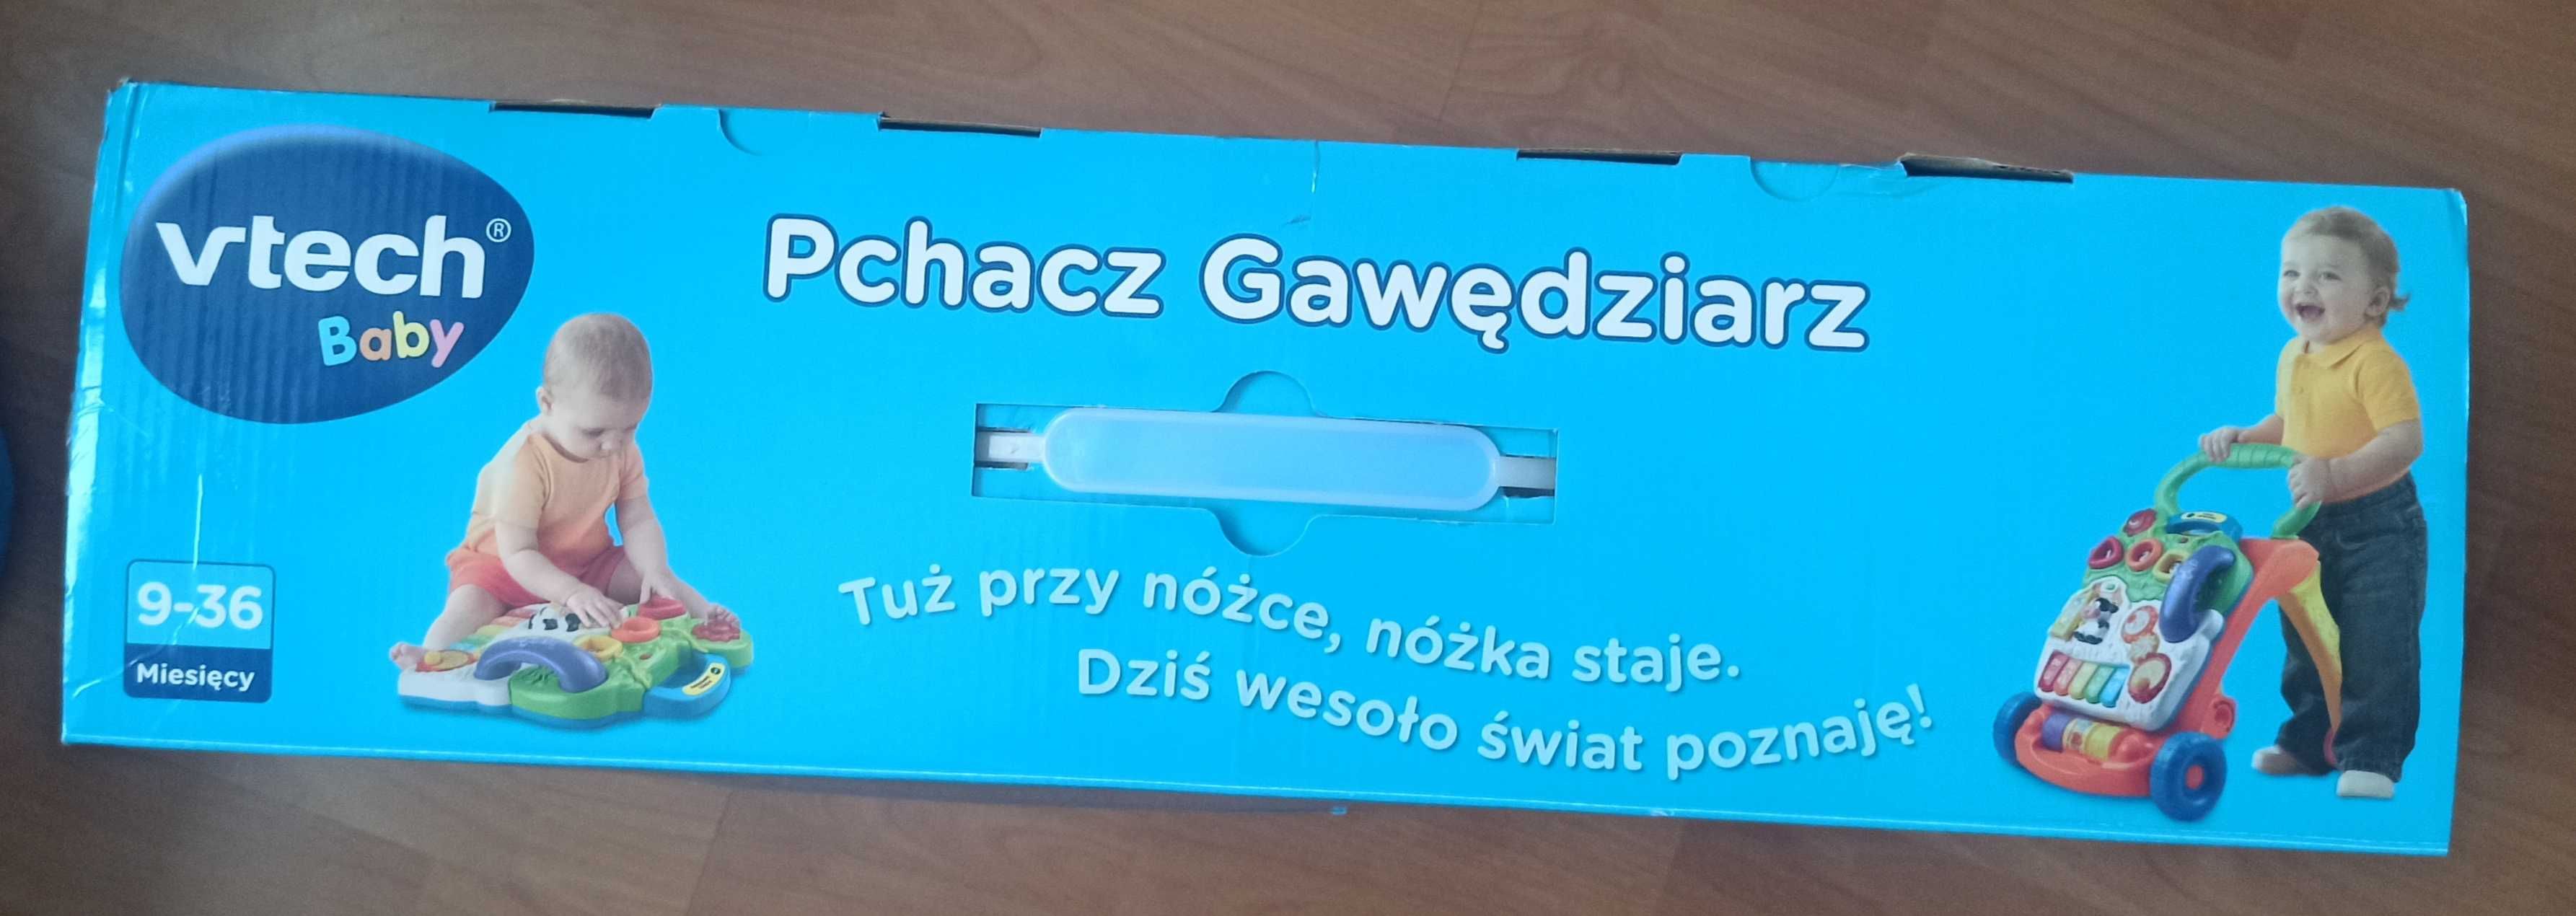 Chodzik Pchacz Gawędziarz VTech, j. POLSKI